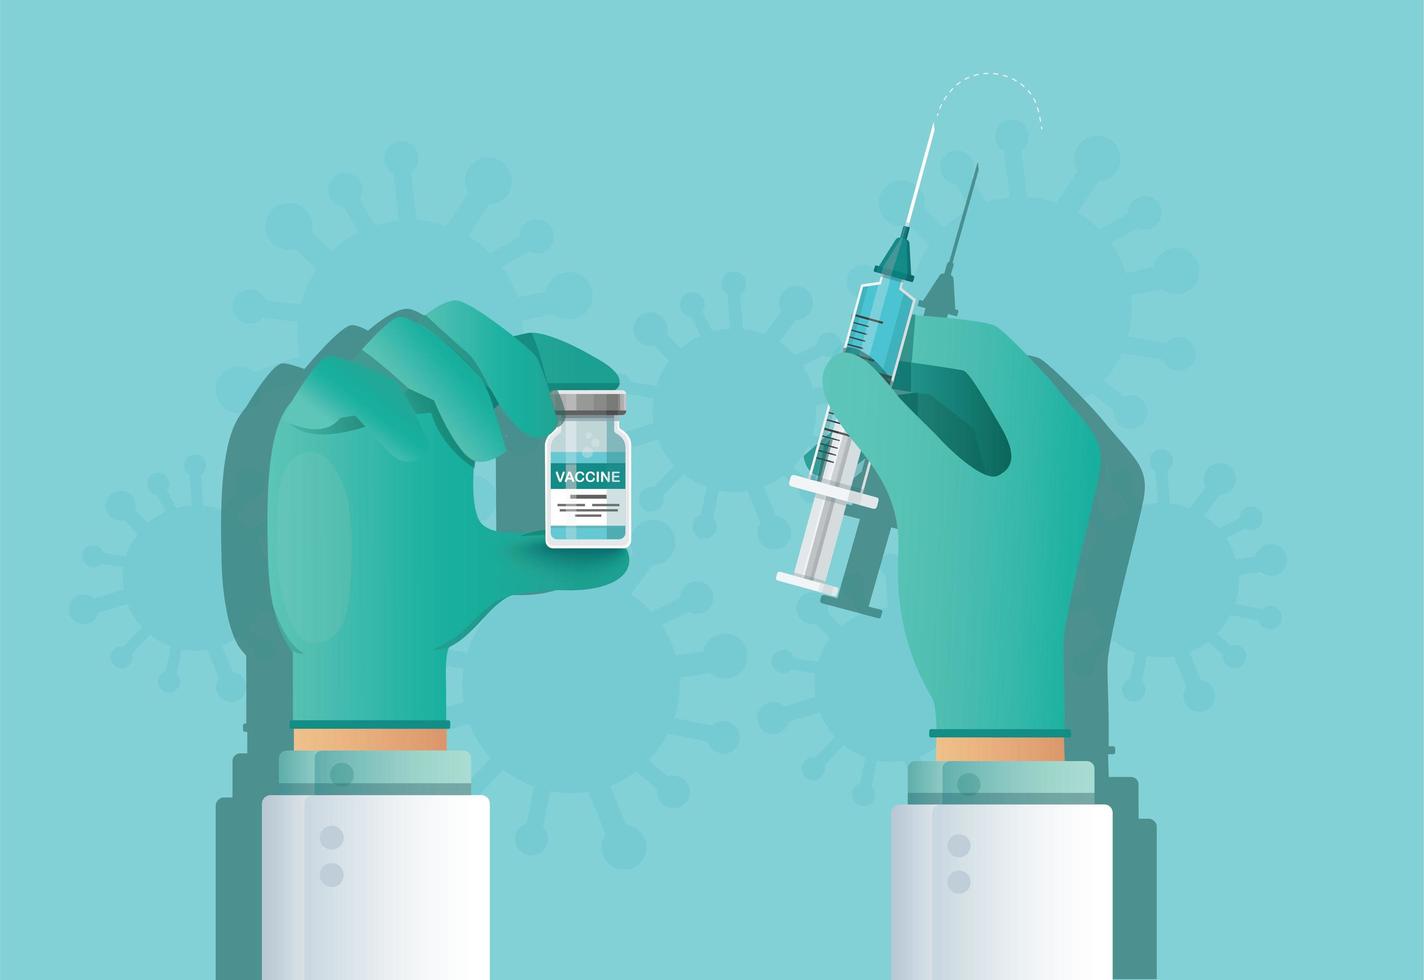 mano sosteniendo el frasco de la vacuna. concepto de vacunación. cuidado y protección de la salud. ilustración vectorial vector